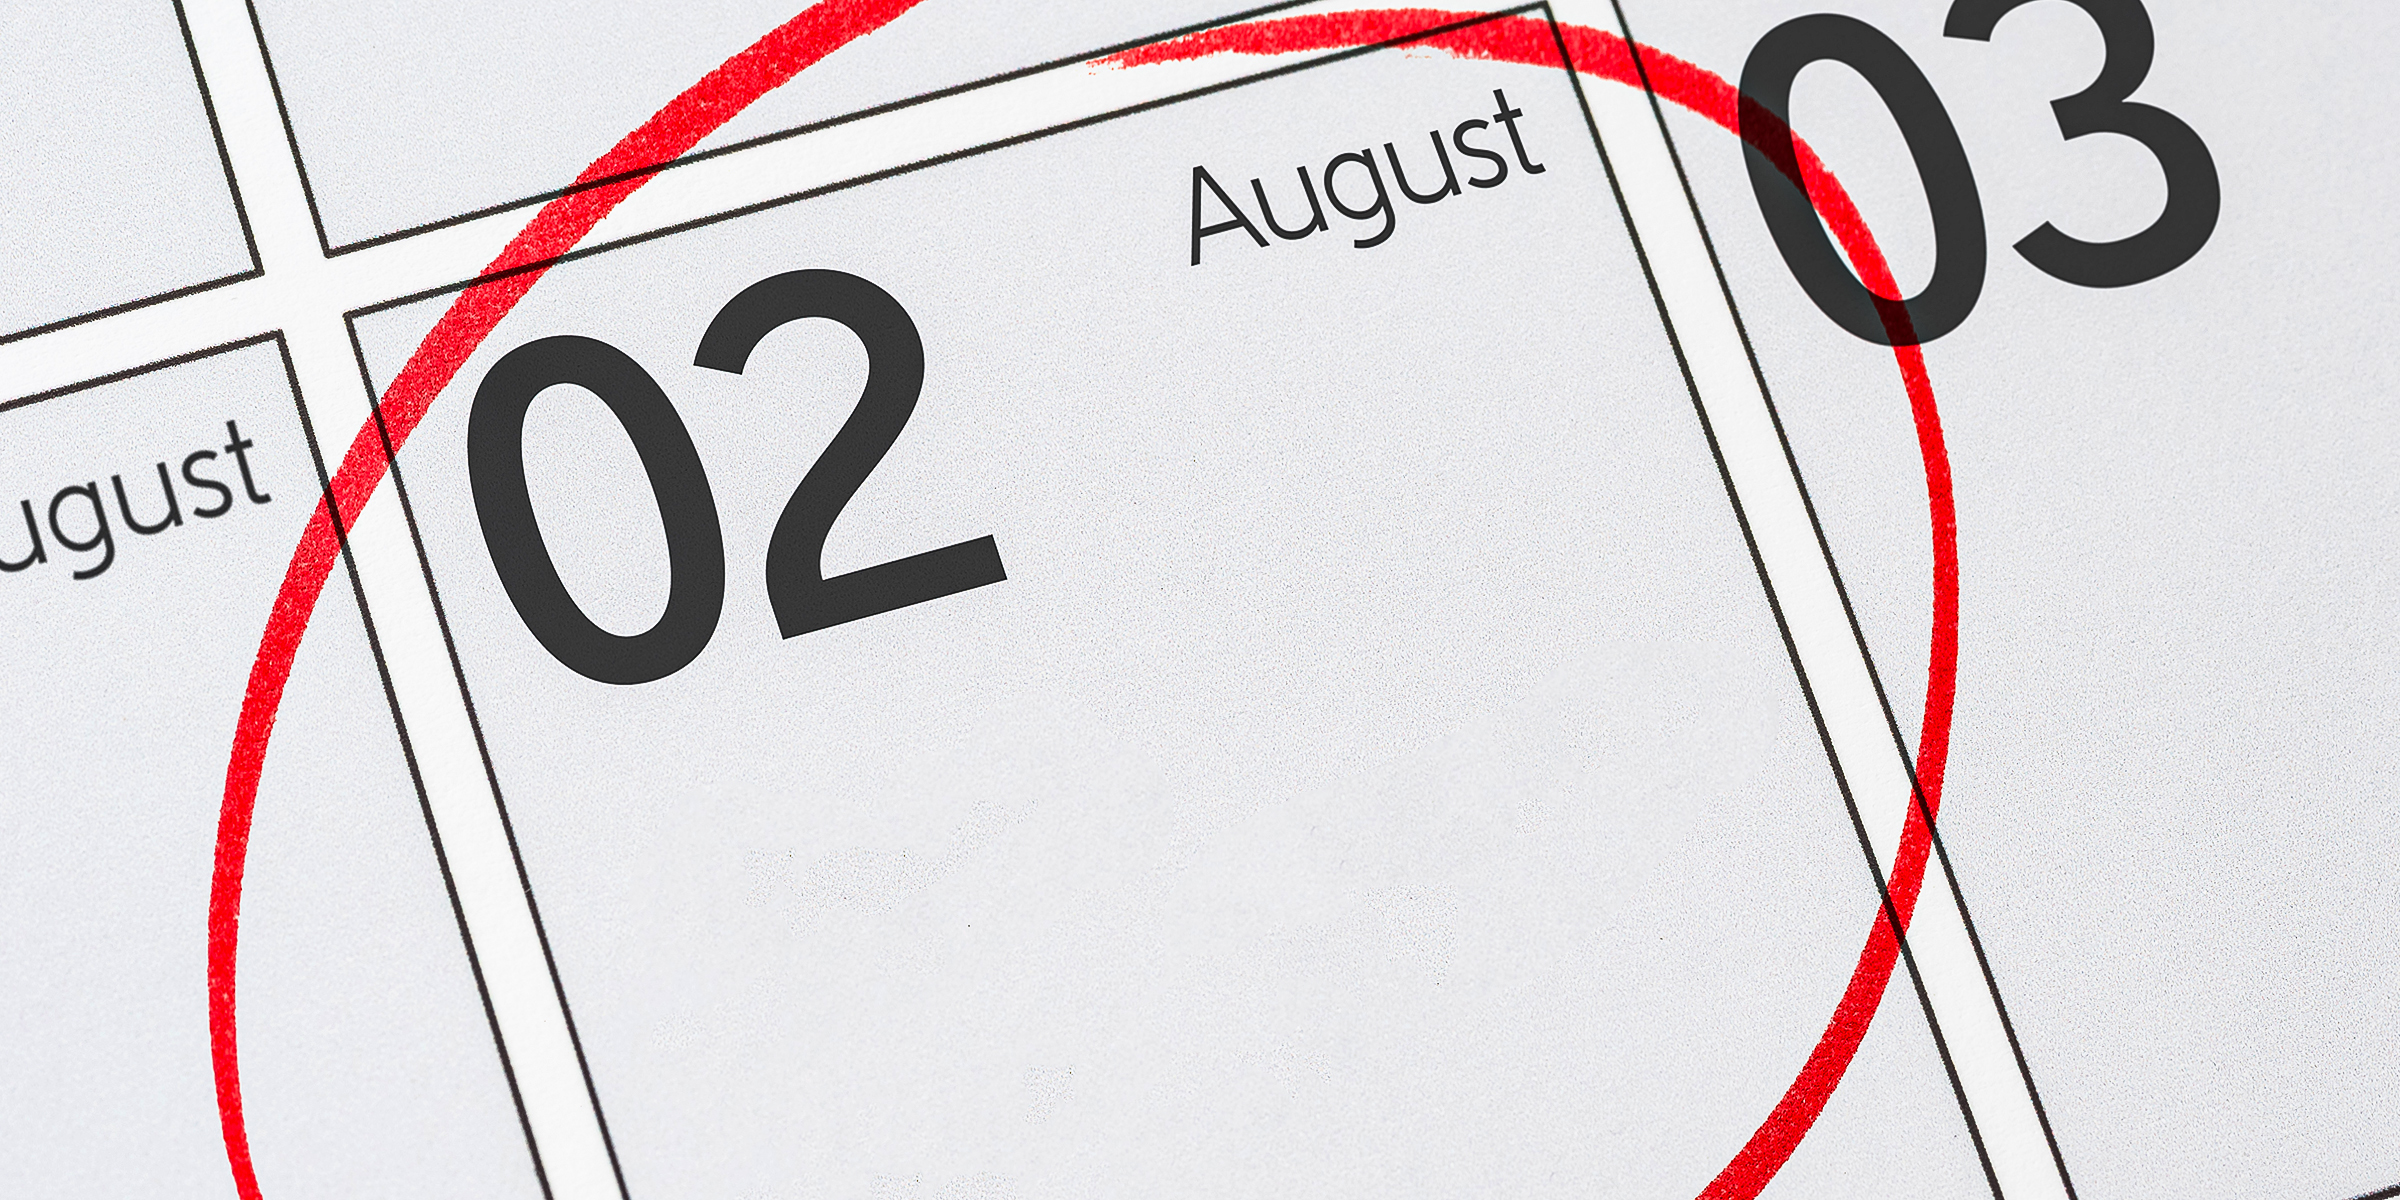 A close-up short of calendar dated August 2nd | Source: Shutterstock